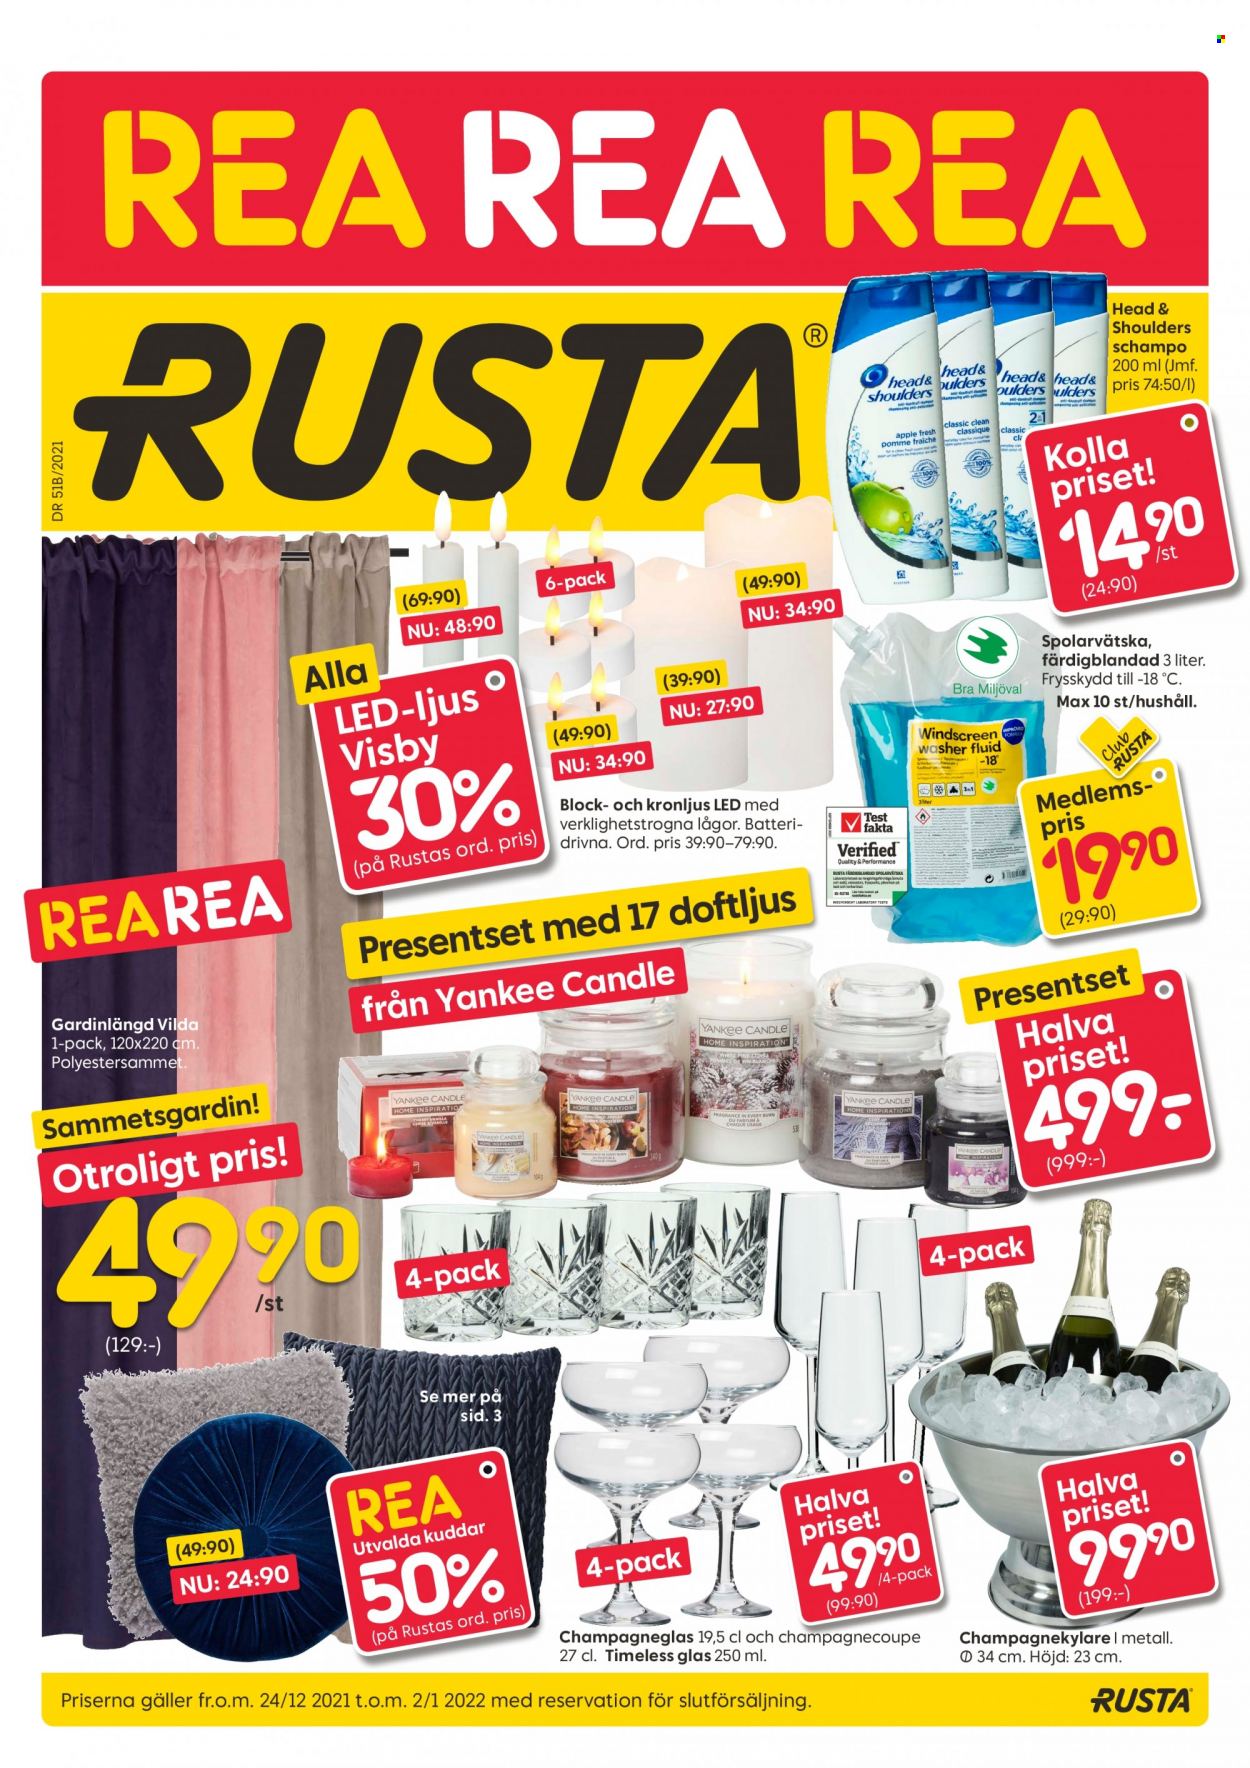 Rusta reklamblad - 24/12 2021 - 2/1 2022.